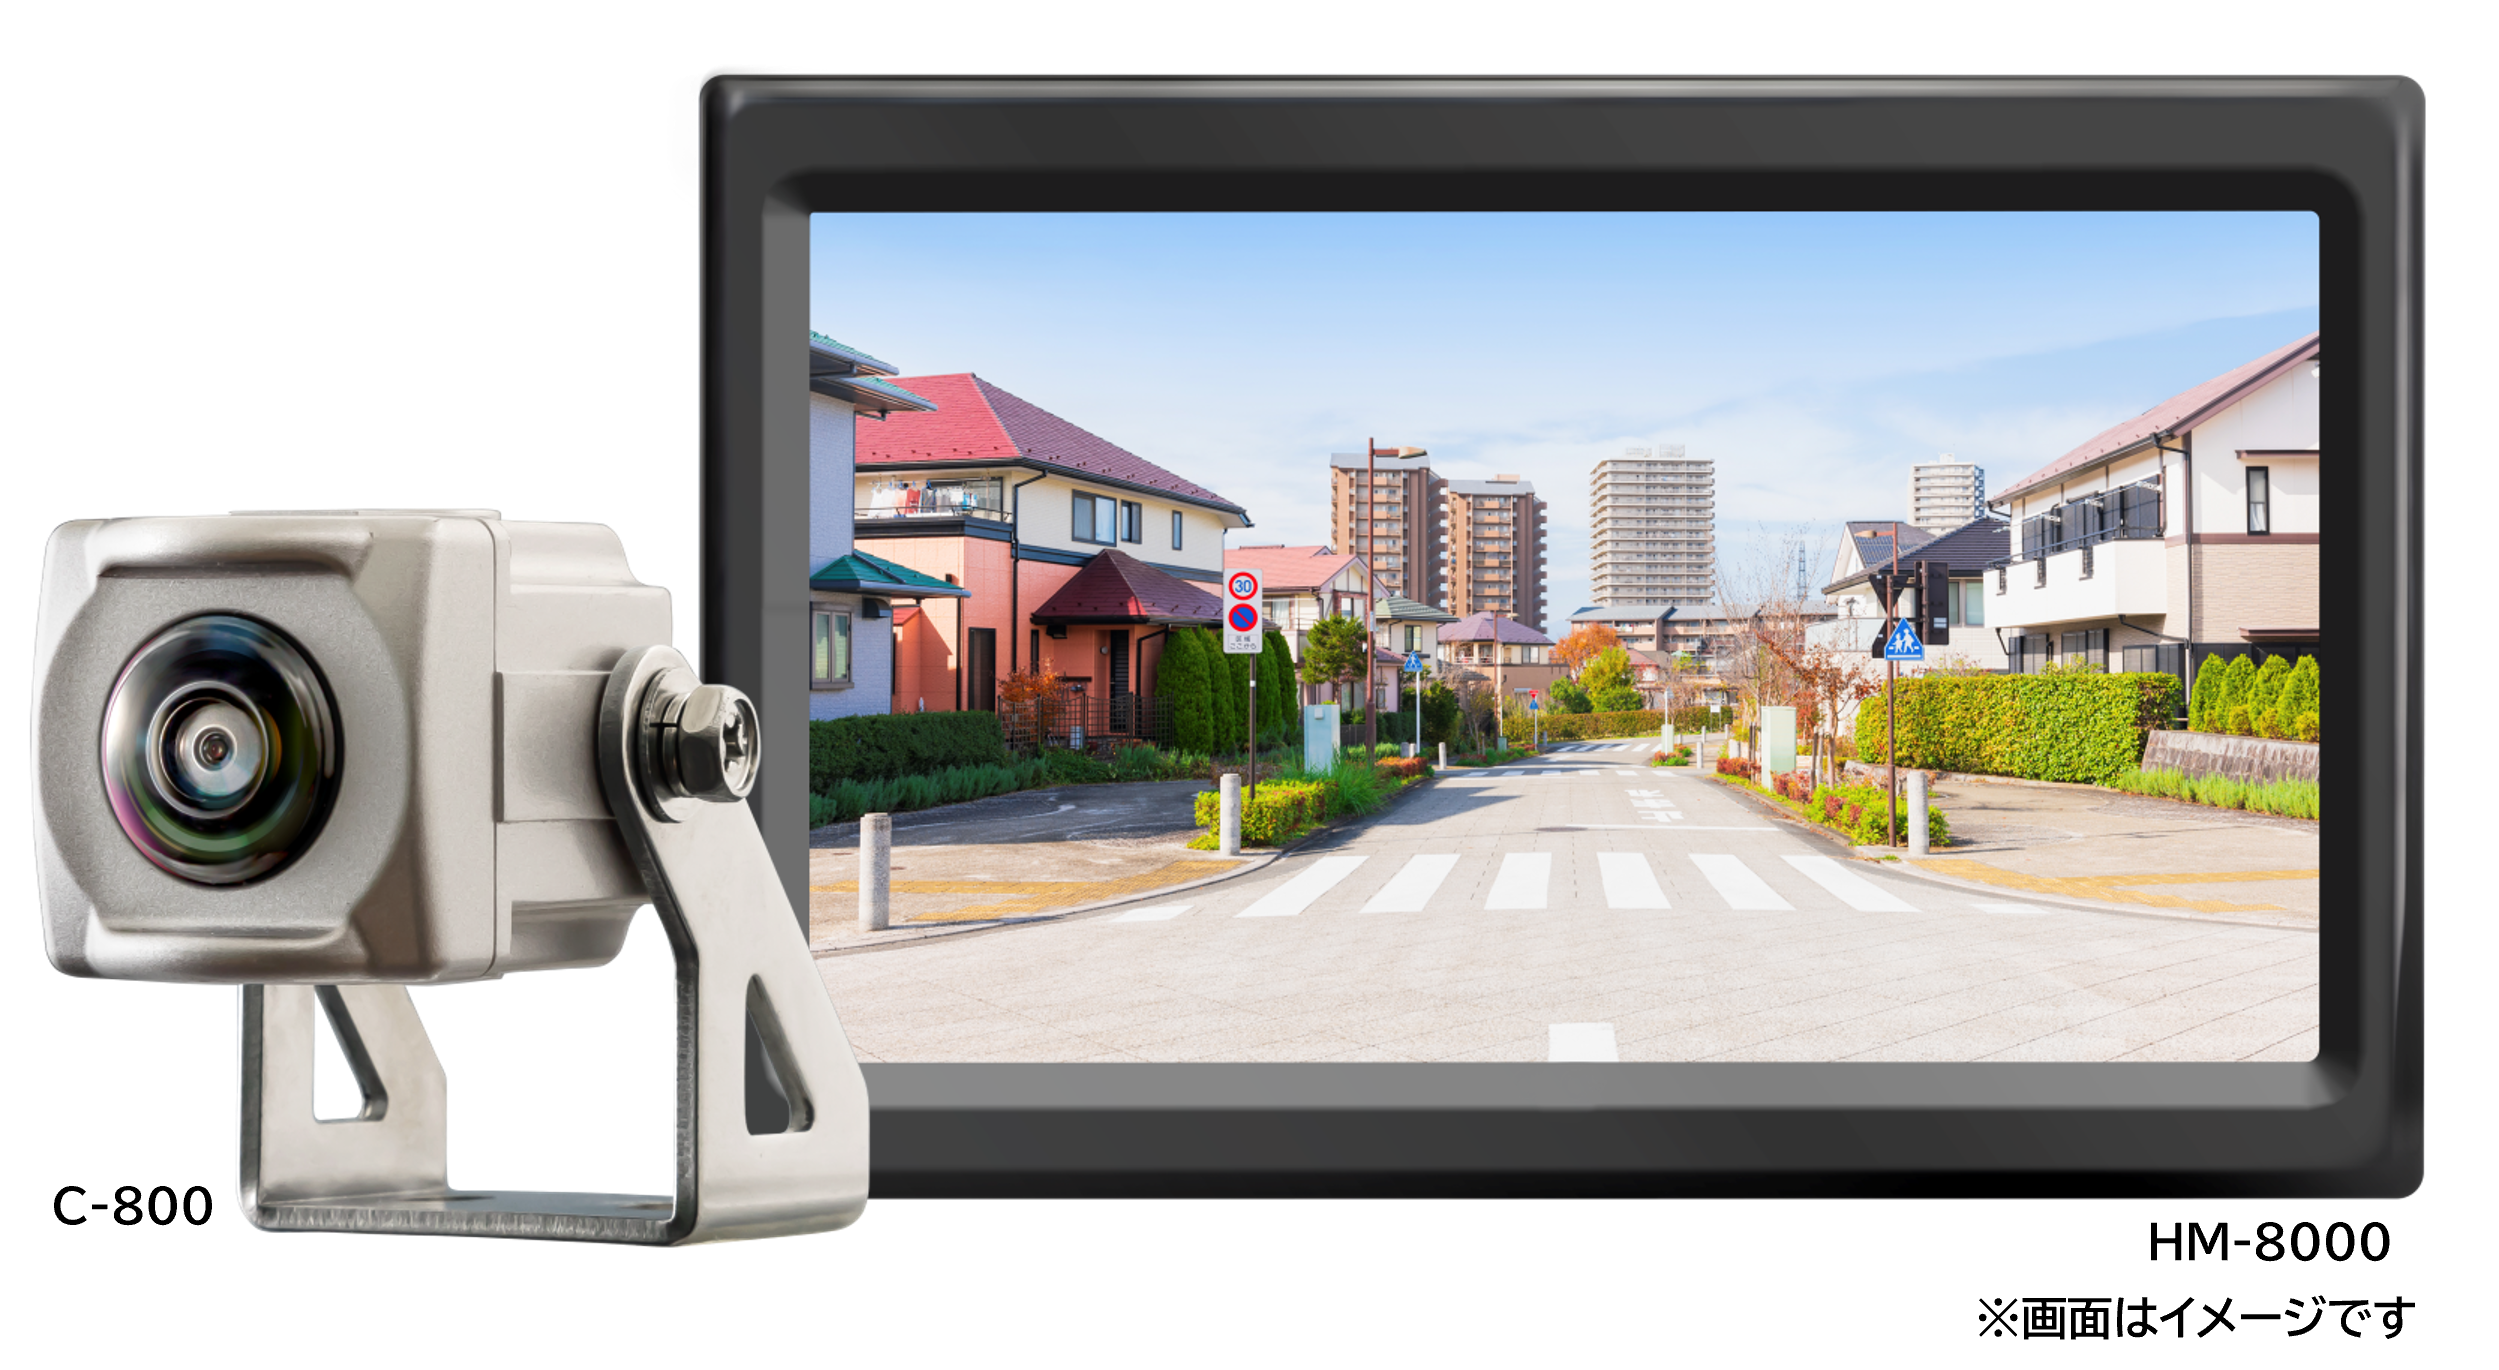 車両後方 側方安全確認カメラシステム Hd Car View System Tm 発売のご案内 株式会社コシダテックのプレスリリース